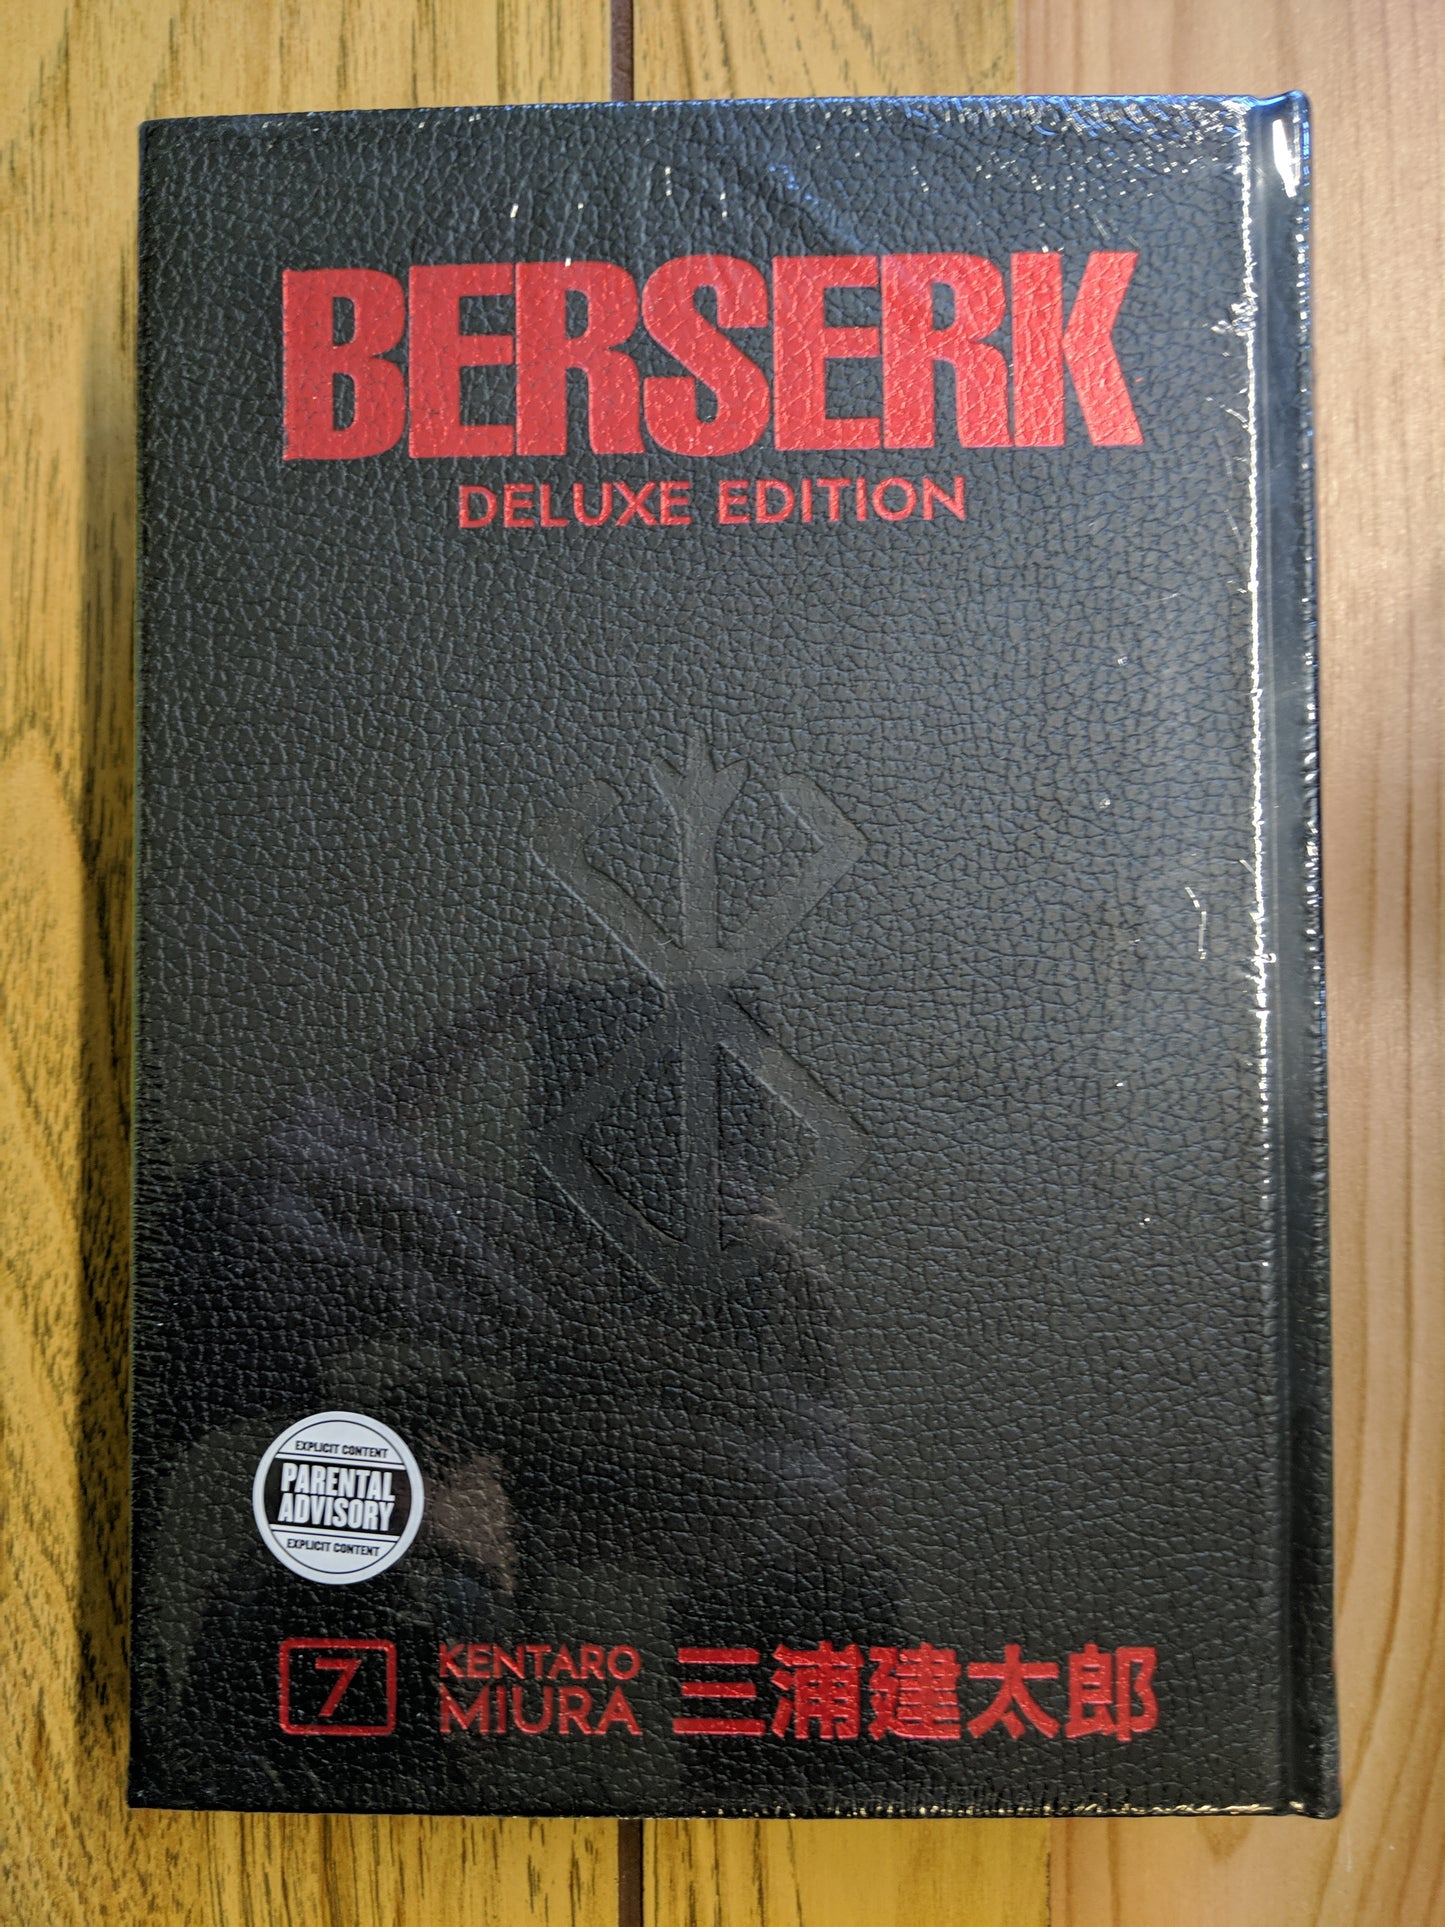 Berserk Deluxe Edition, Vol 7